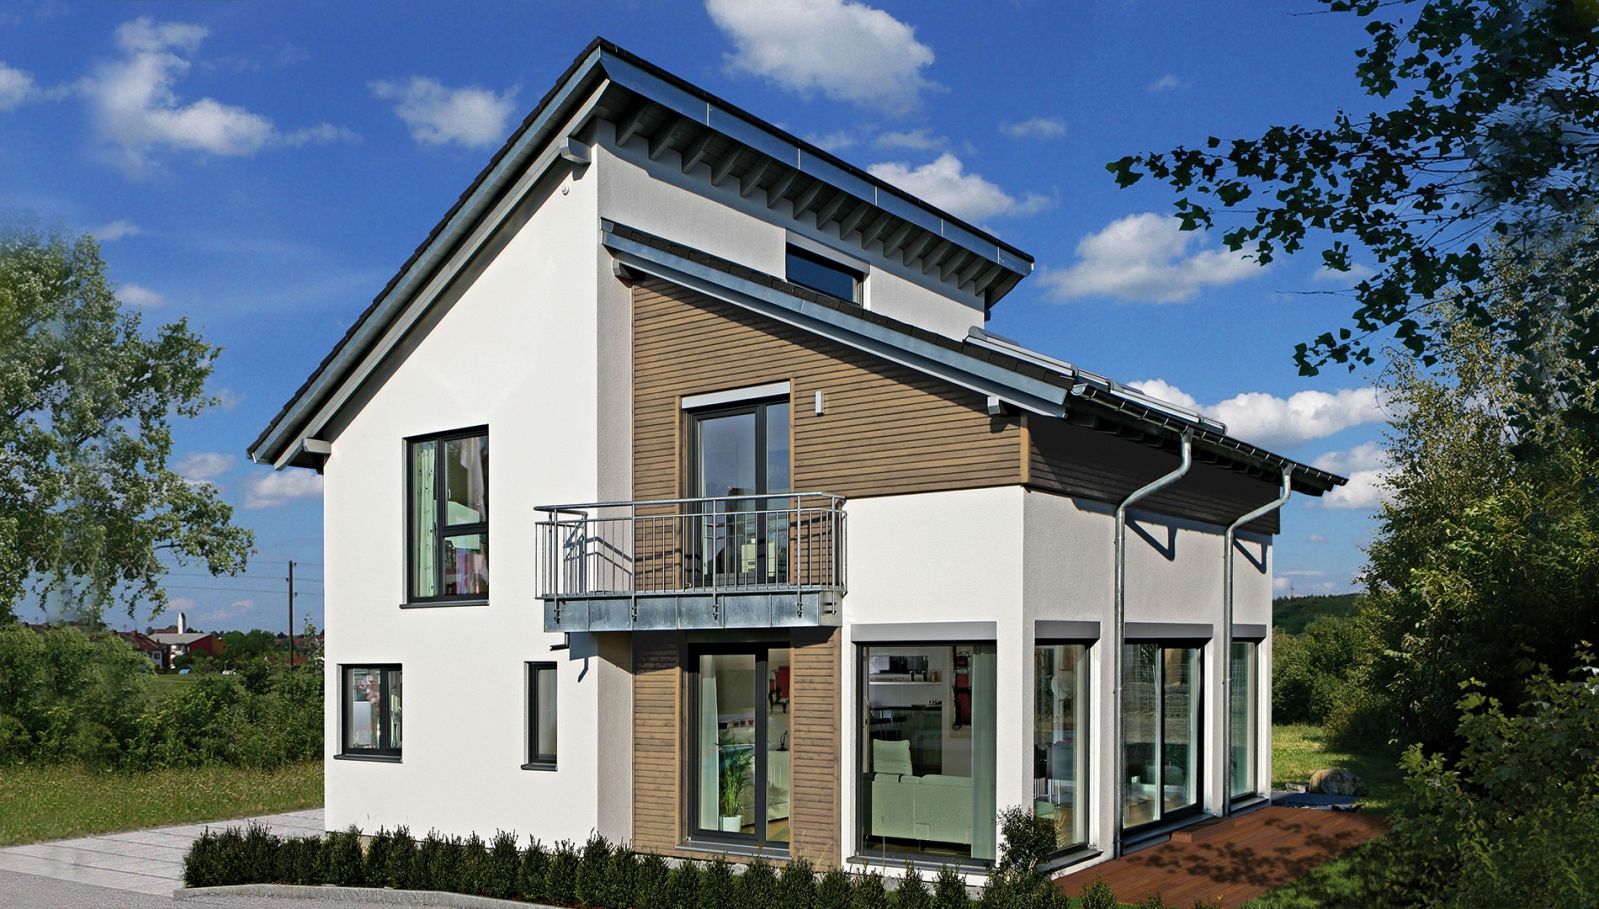 新能源系列 途墅之家别墅图纸设计, 层叠屋顶 太阳能